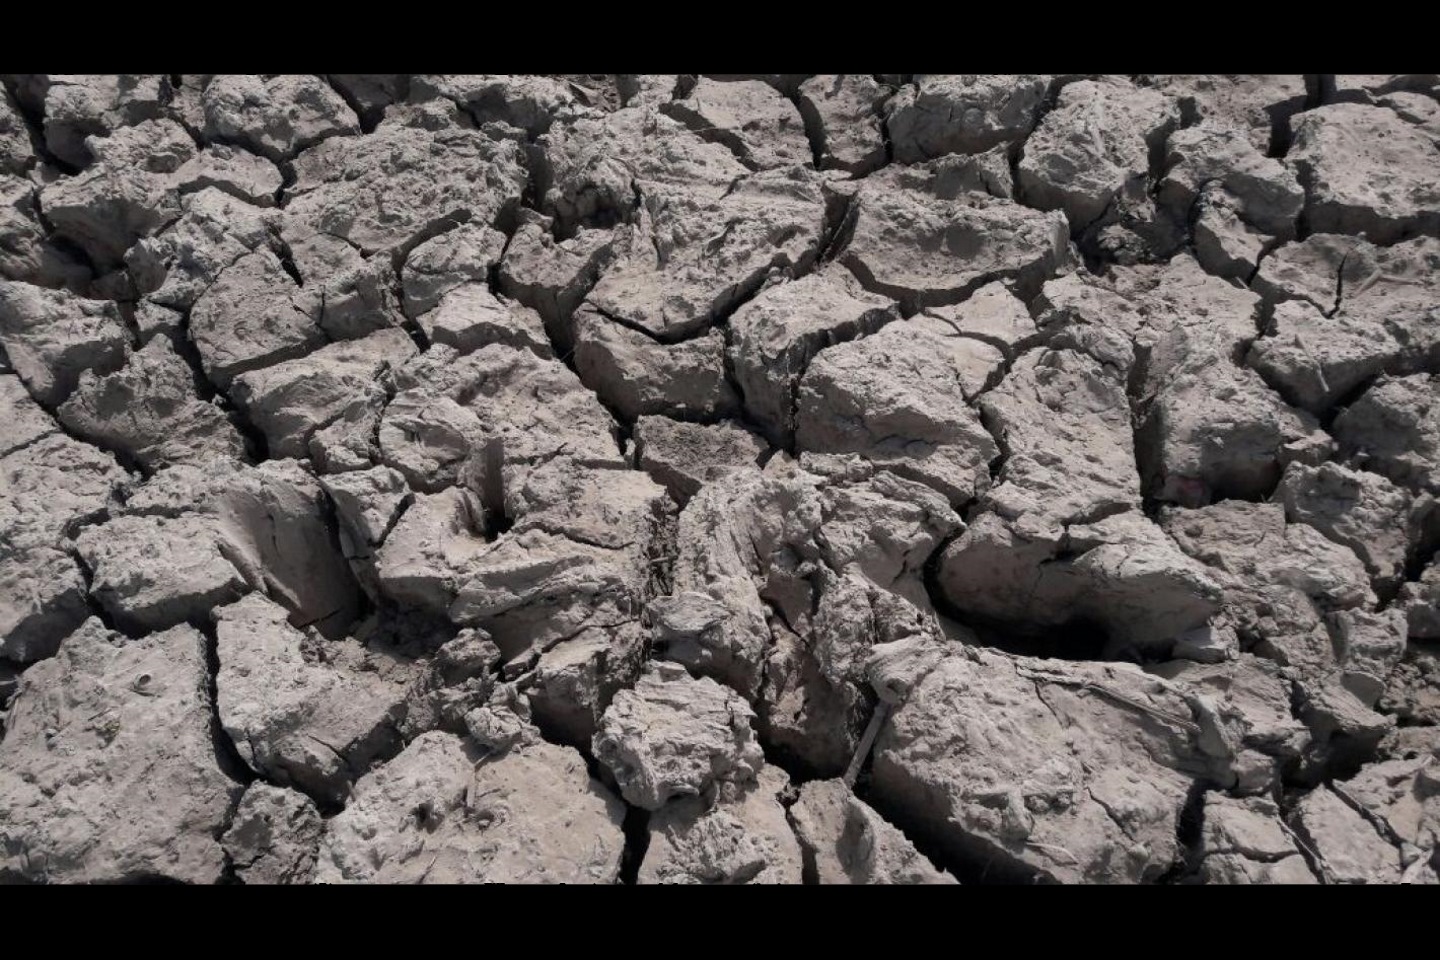 Синдская провинция в Пакистане испытала мрачное сочетание двух последствий изменения климата. «Из-за изменения климата у нас есть или наводнения или недостаточно воды для орошения нашего урожая и кормления наших животных», - говорит фотограф. «Картина ясно показывает, что экстремальная засуха делает широкие трещины в глине. Сельхозкультурам очень трудно расти». Фото: Ризван Дареджо